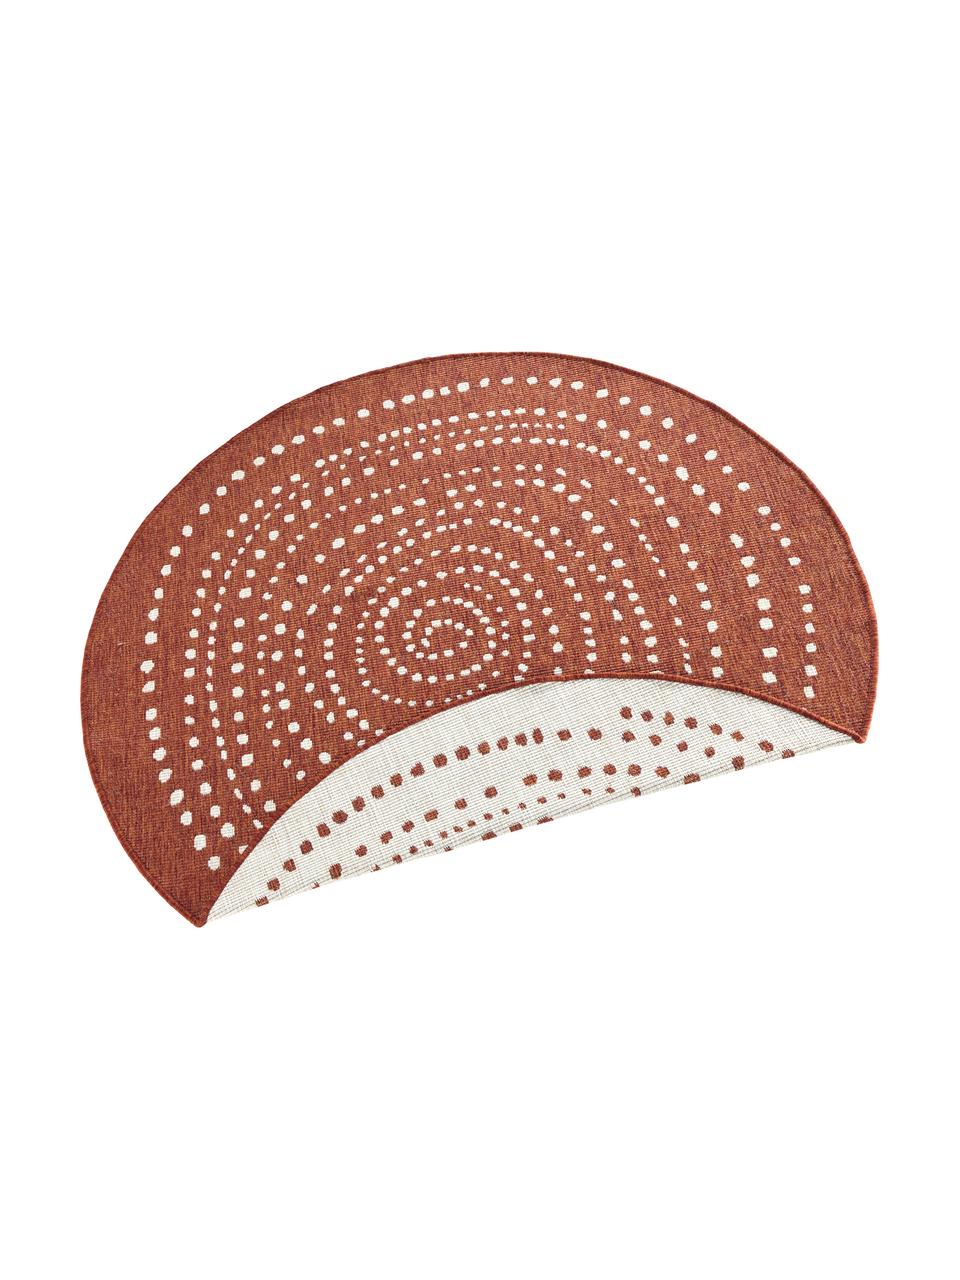 Okrągły dwustronny dywan wewnętrzny/zewnętrzny Bali, Terakota, odcienie kremowego, Ø 140 cm (Rozmiar M)